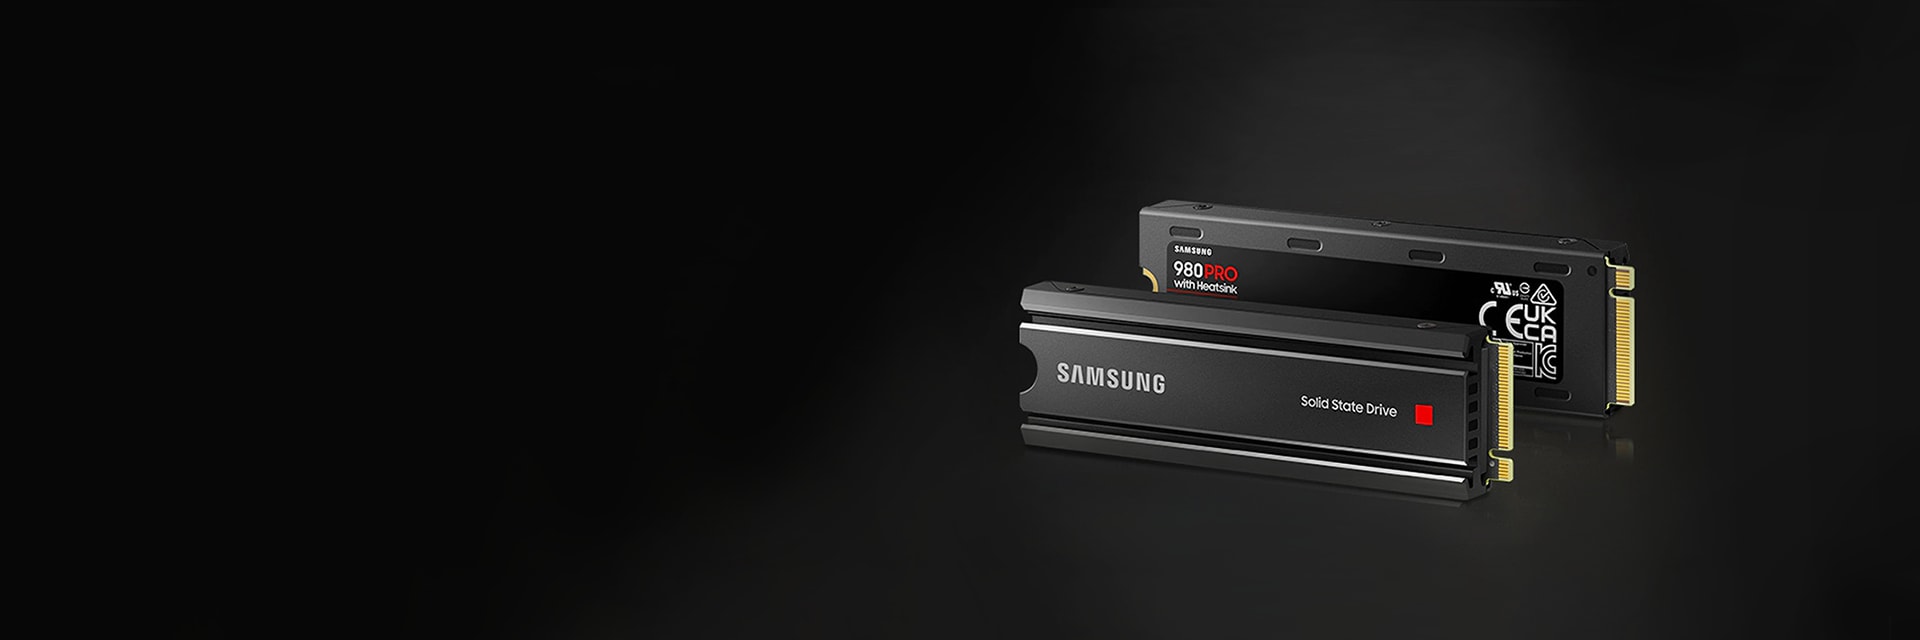 PC/タブレット PCパーツ Samsung 980 PRO with Heatsink | Samsung Semiconductor USA